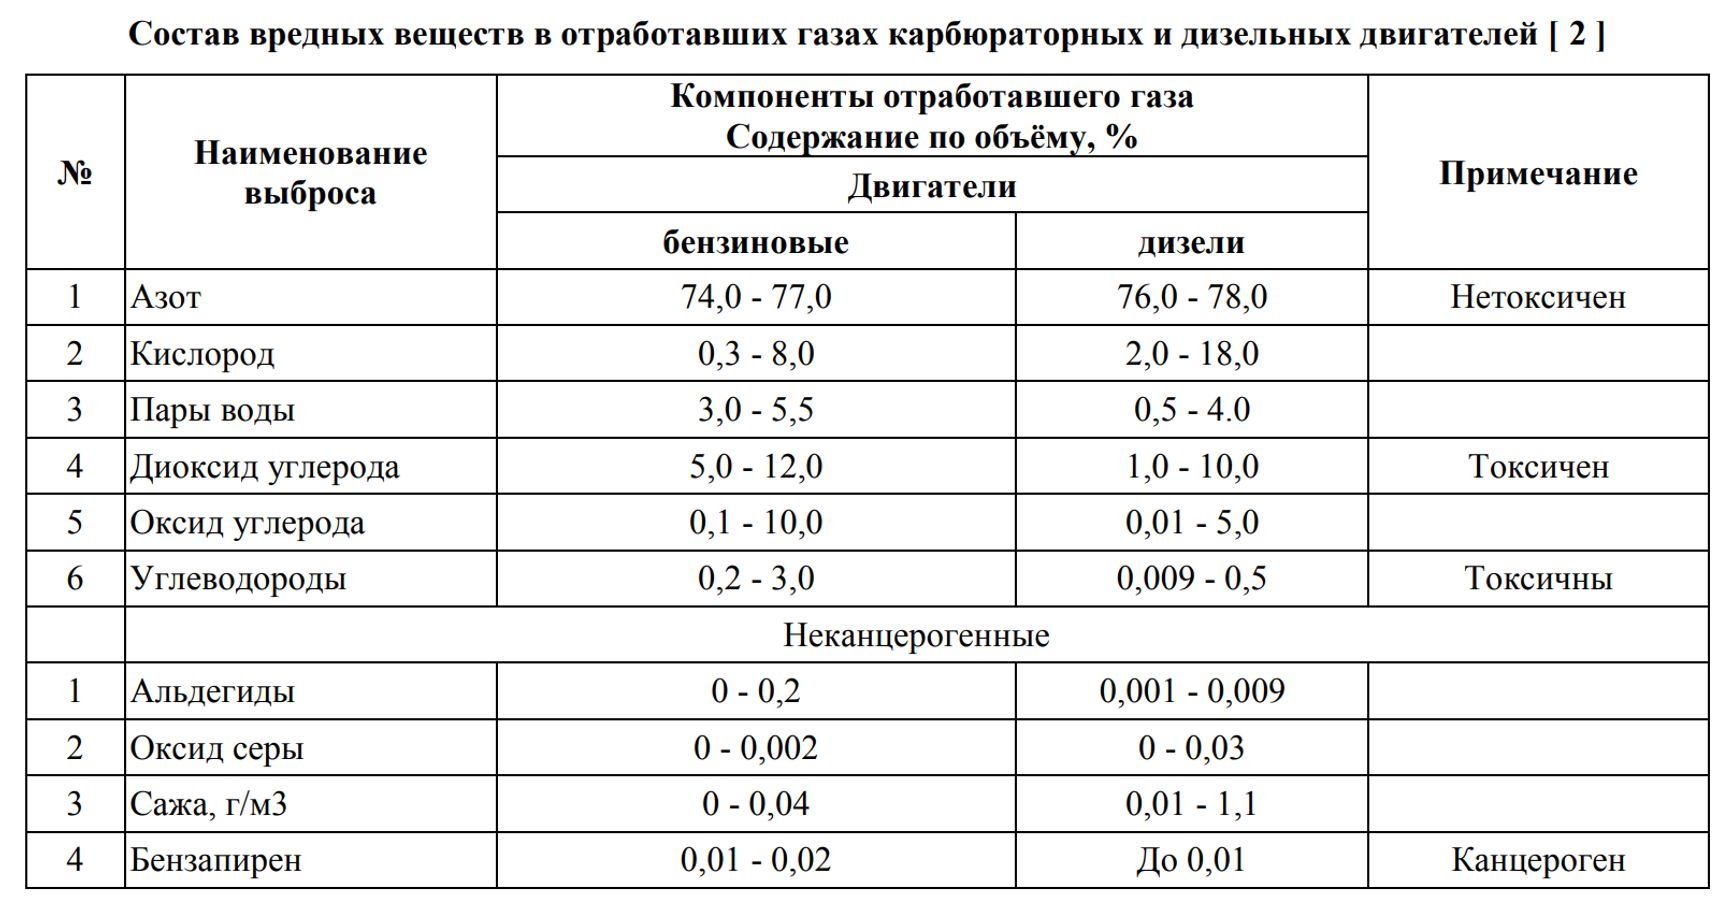 Источник: «Сравнительный анализ токсичности выхлопных газов автомобилей и пути ее снижения», Н.Каримходжаев, М. З. Нумонов, 2020 